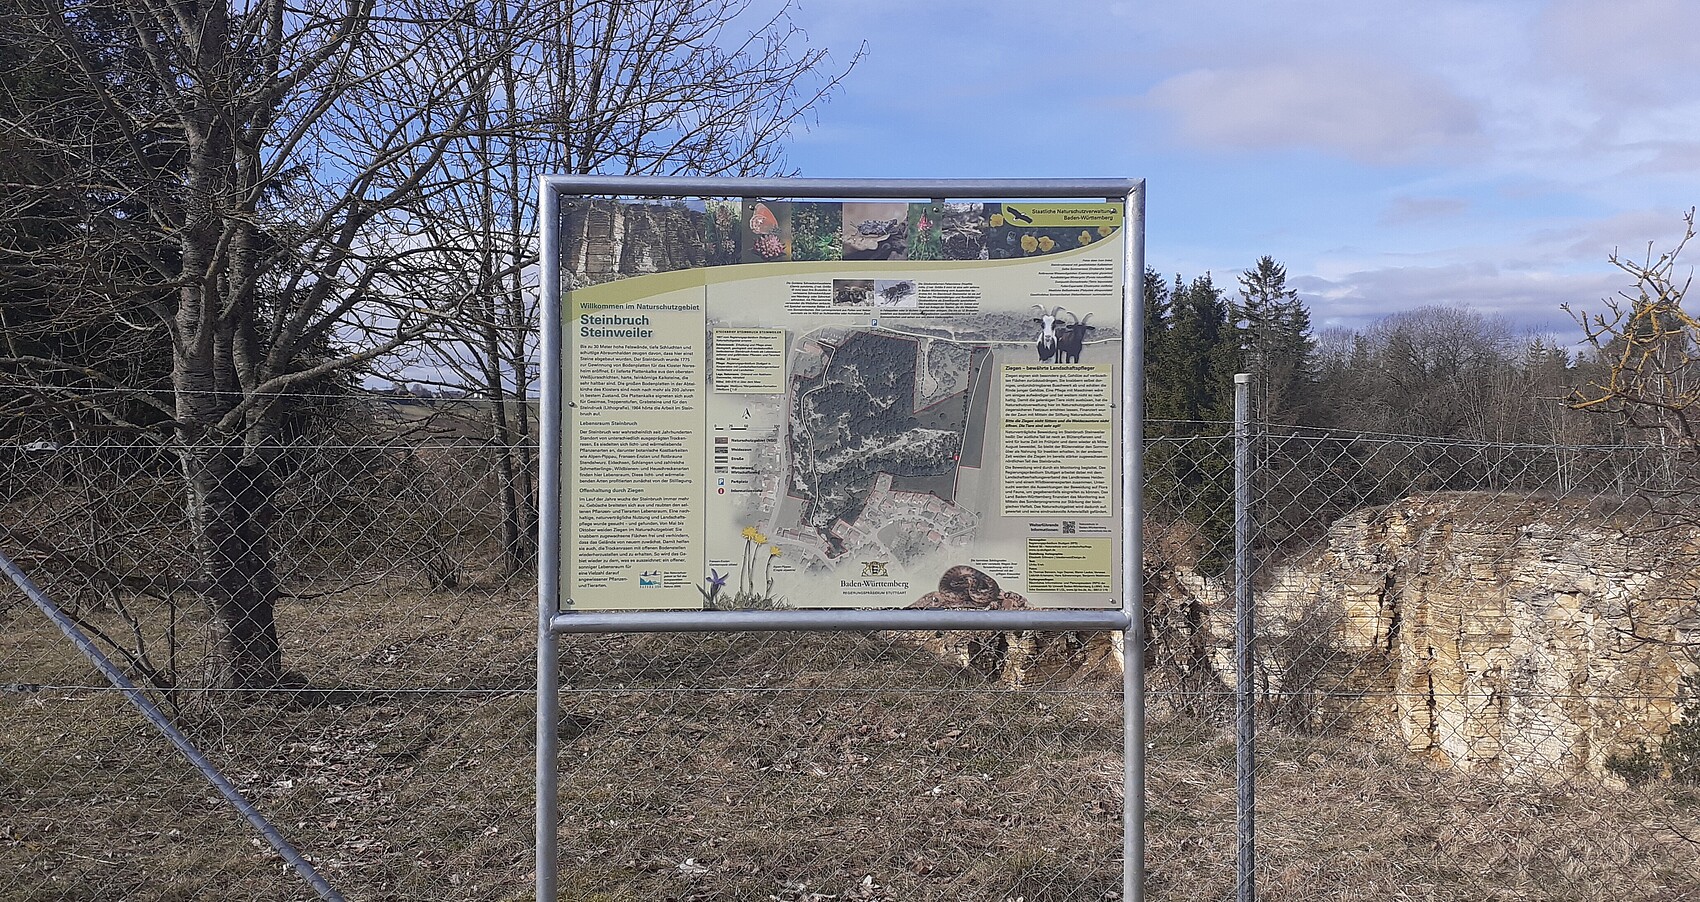 Bild zeigt eine Informationstafel im Naturschutzgebiet "Steinbruch Steinweiler" 